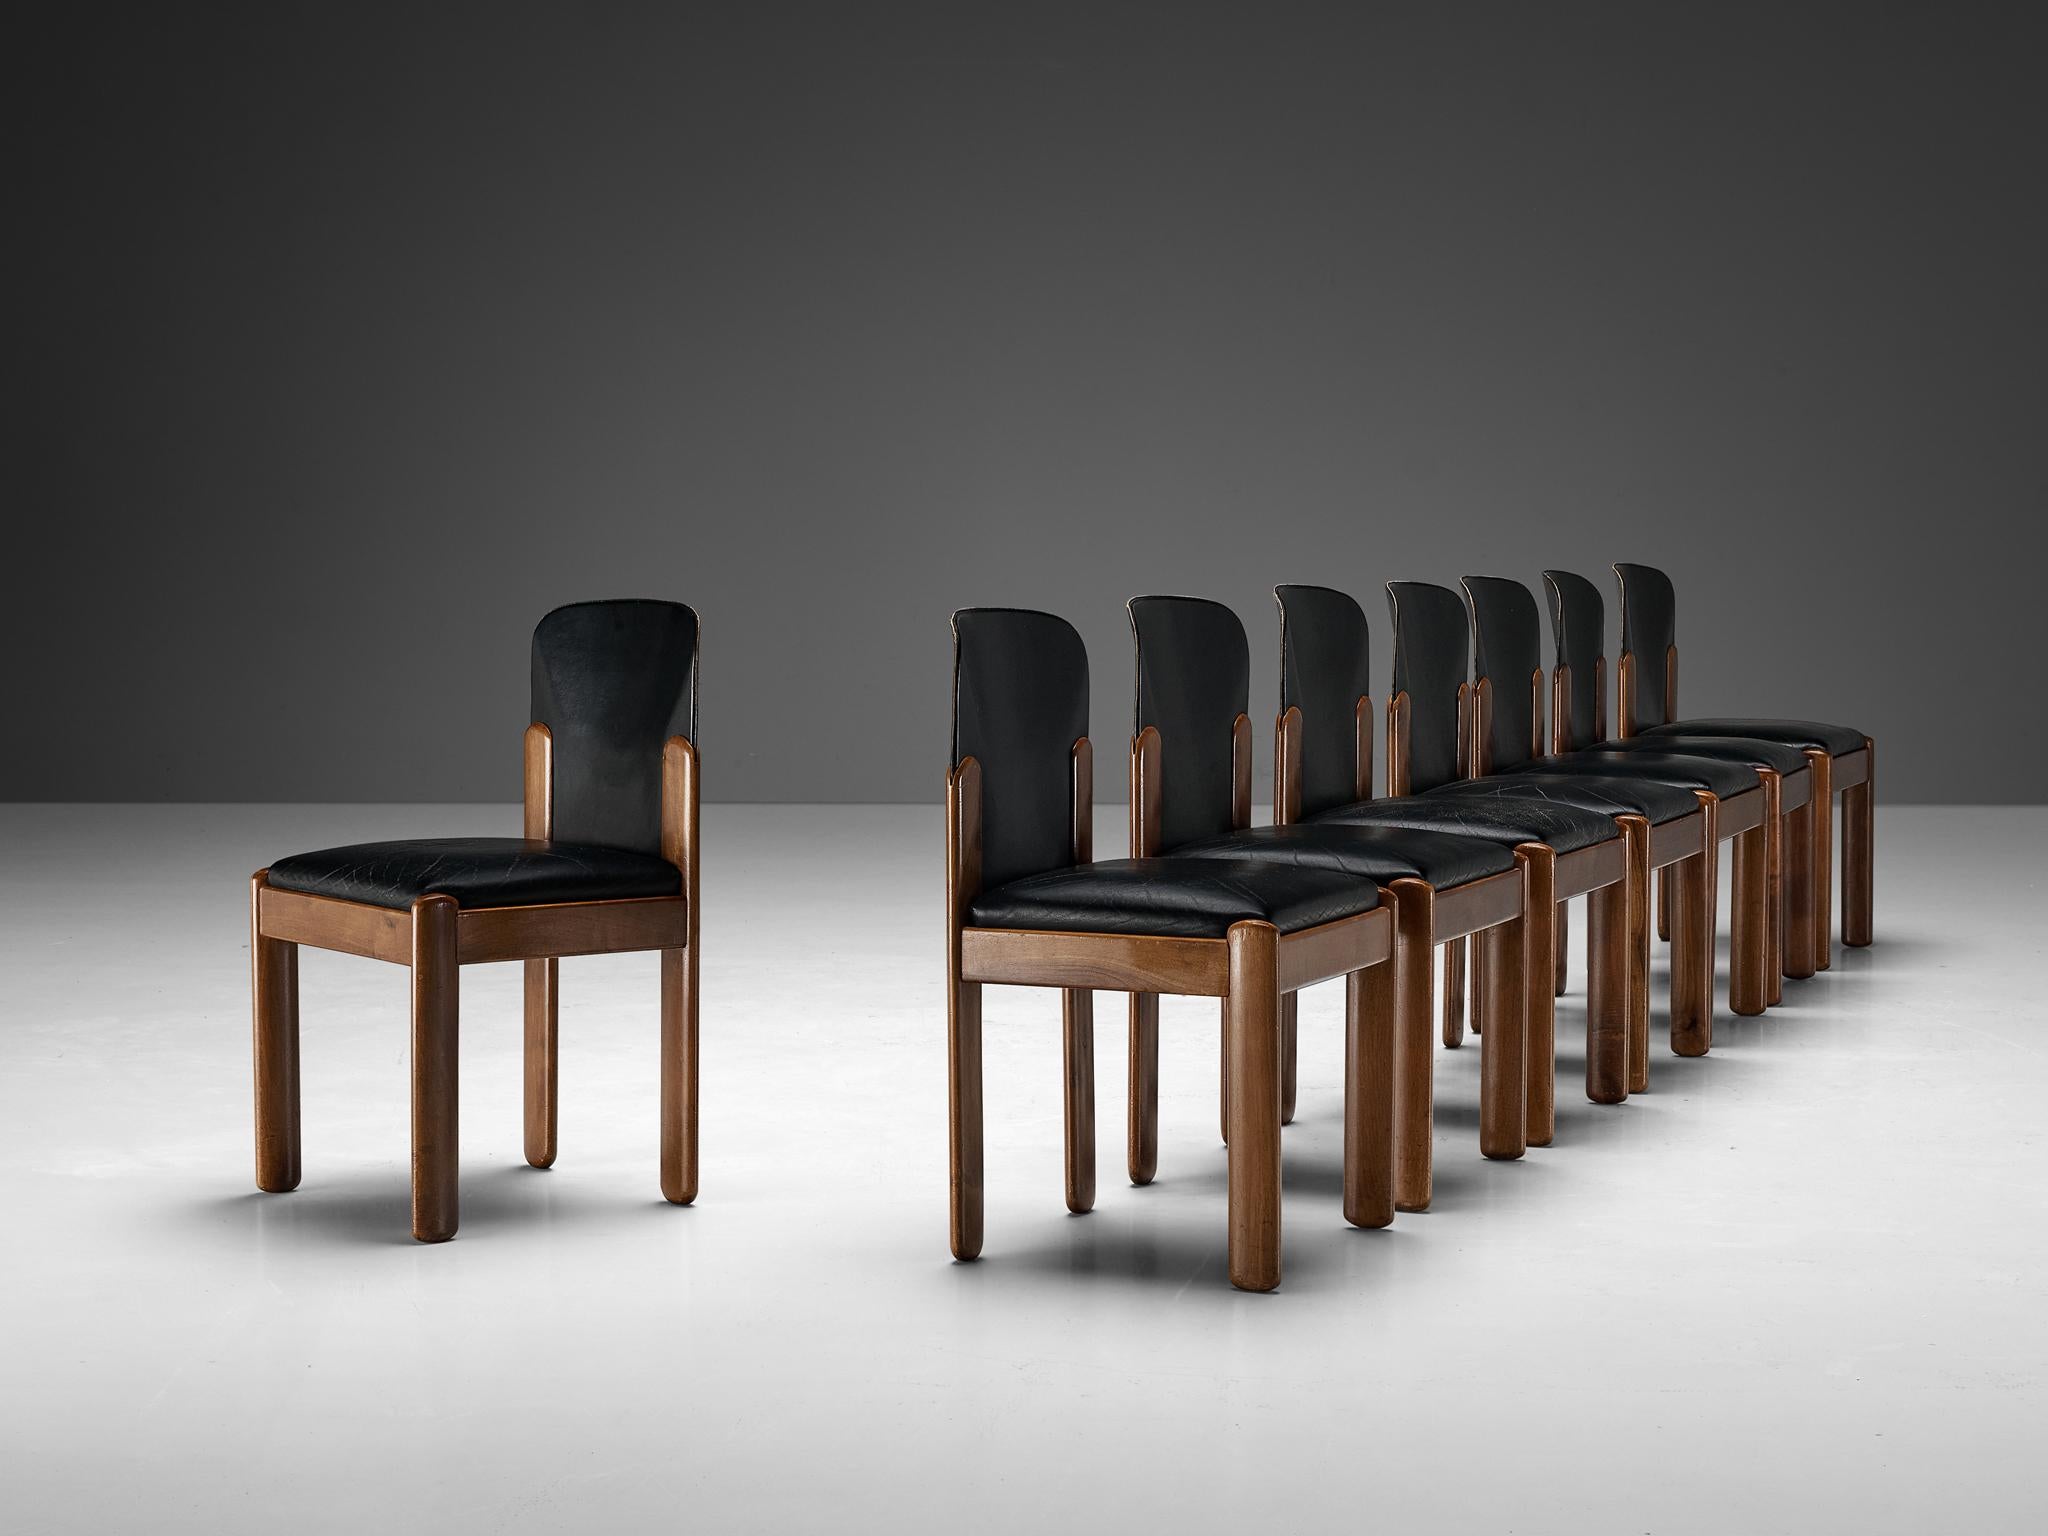 Silvio Coppola pour Bernini, ensemble de huit chaises de salle à manger, modèle '330', cuir, noyer, Italie, 1969

Magnifique ensemble de chaises de salle à manger en cuir noir et bois de noyer par le designer italien Silvio Coppola. Ces chaises